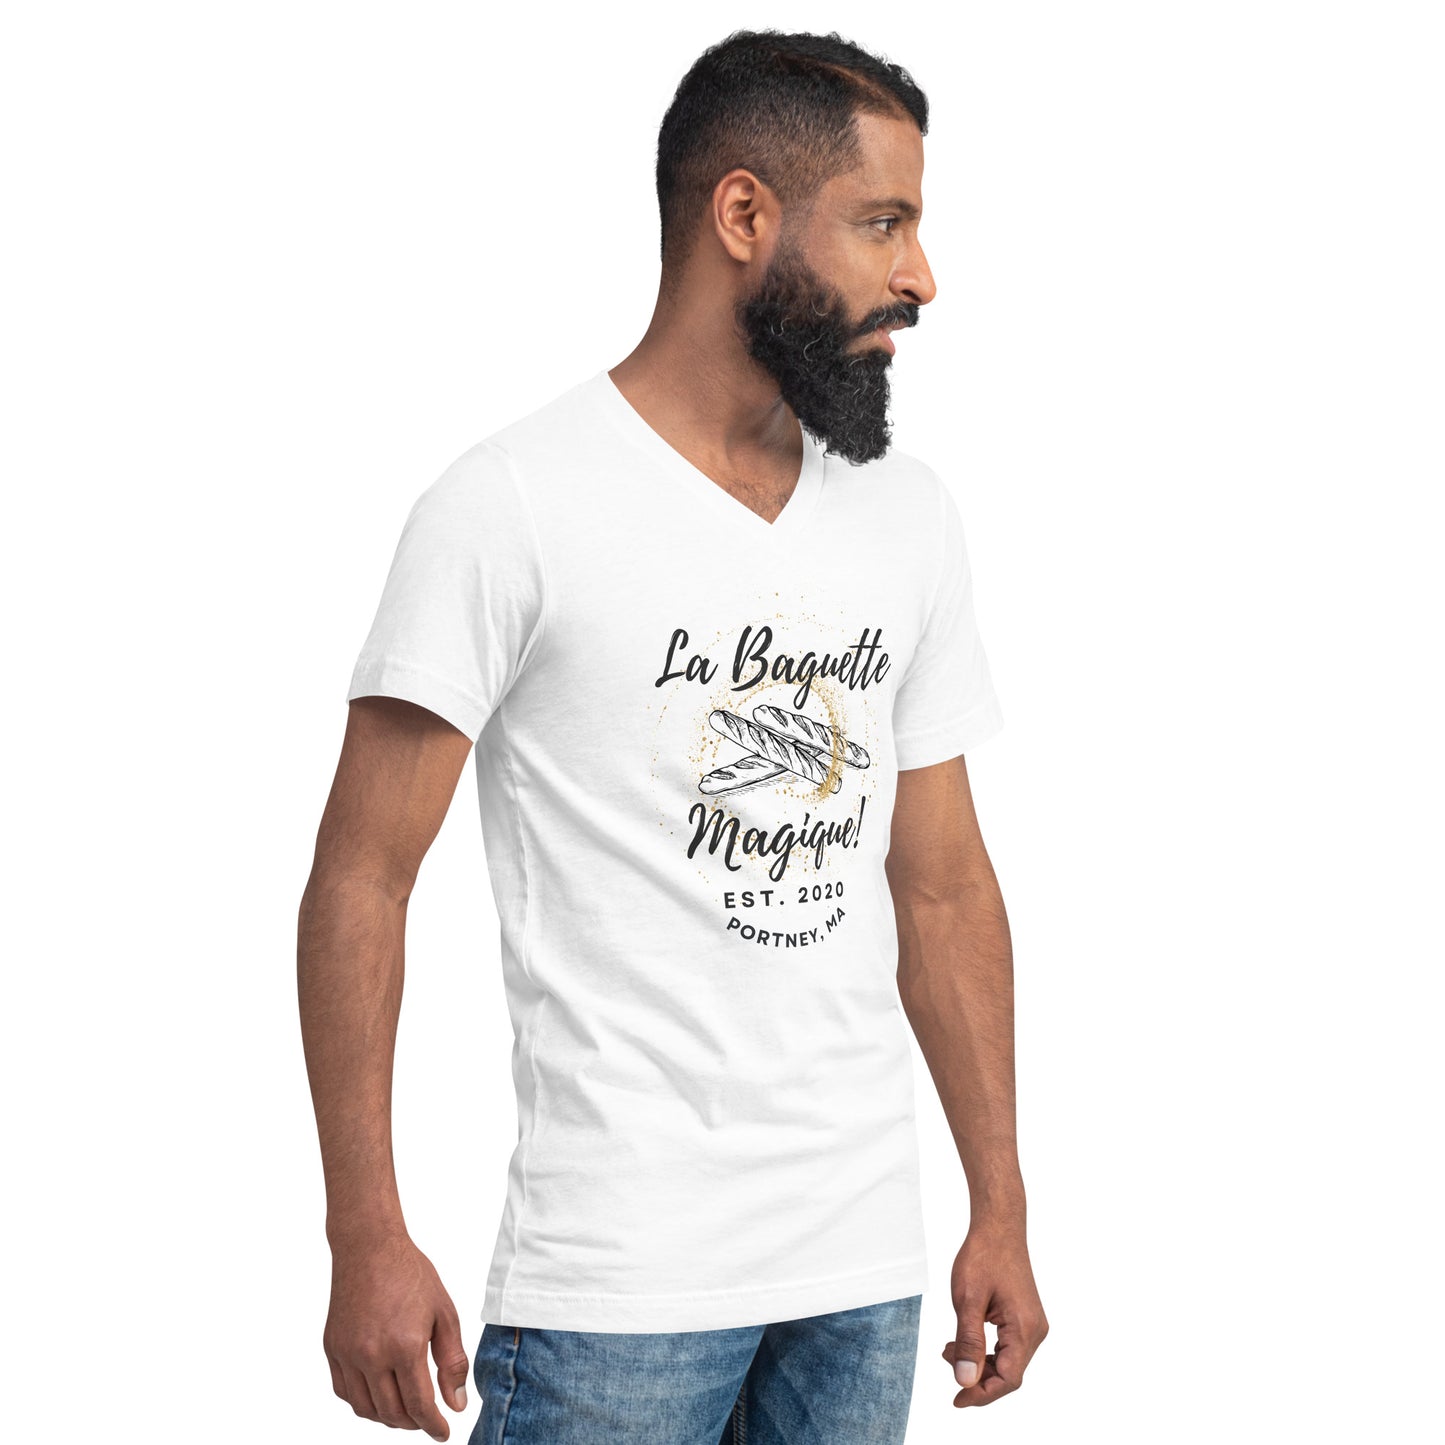 La Baguette Magique! 'STAFF' Unisex Short Sleeve V-Neck T-Shirt